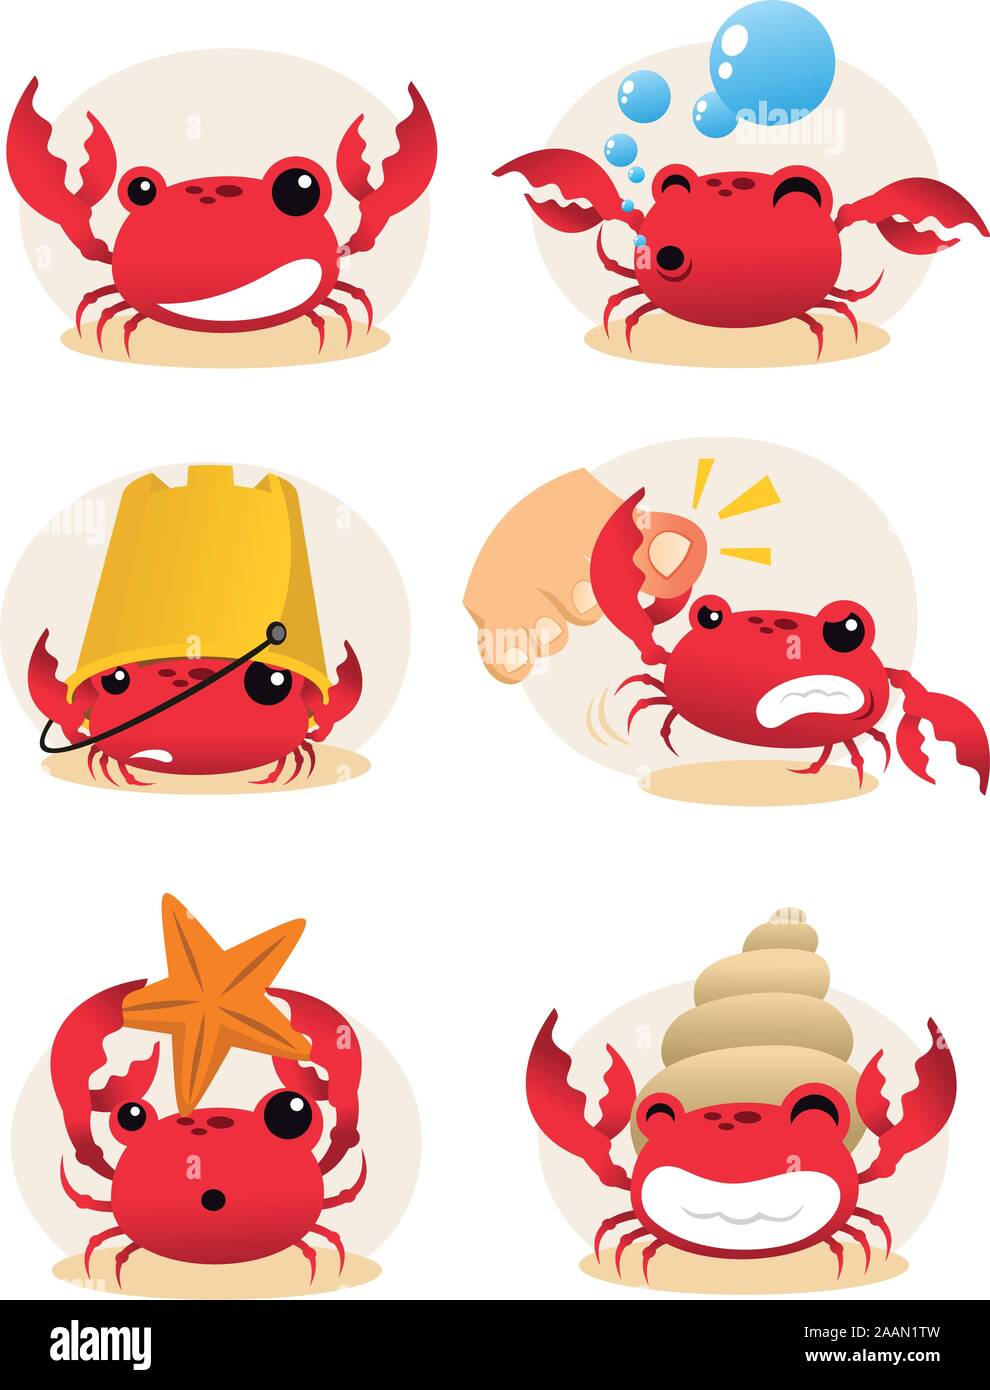 Cartoon cangrejo rojo el conjunto de acciones, con seis diferentes cangrejos en diferentes situaciones ilustración vectorial. Ilustración del Vector